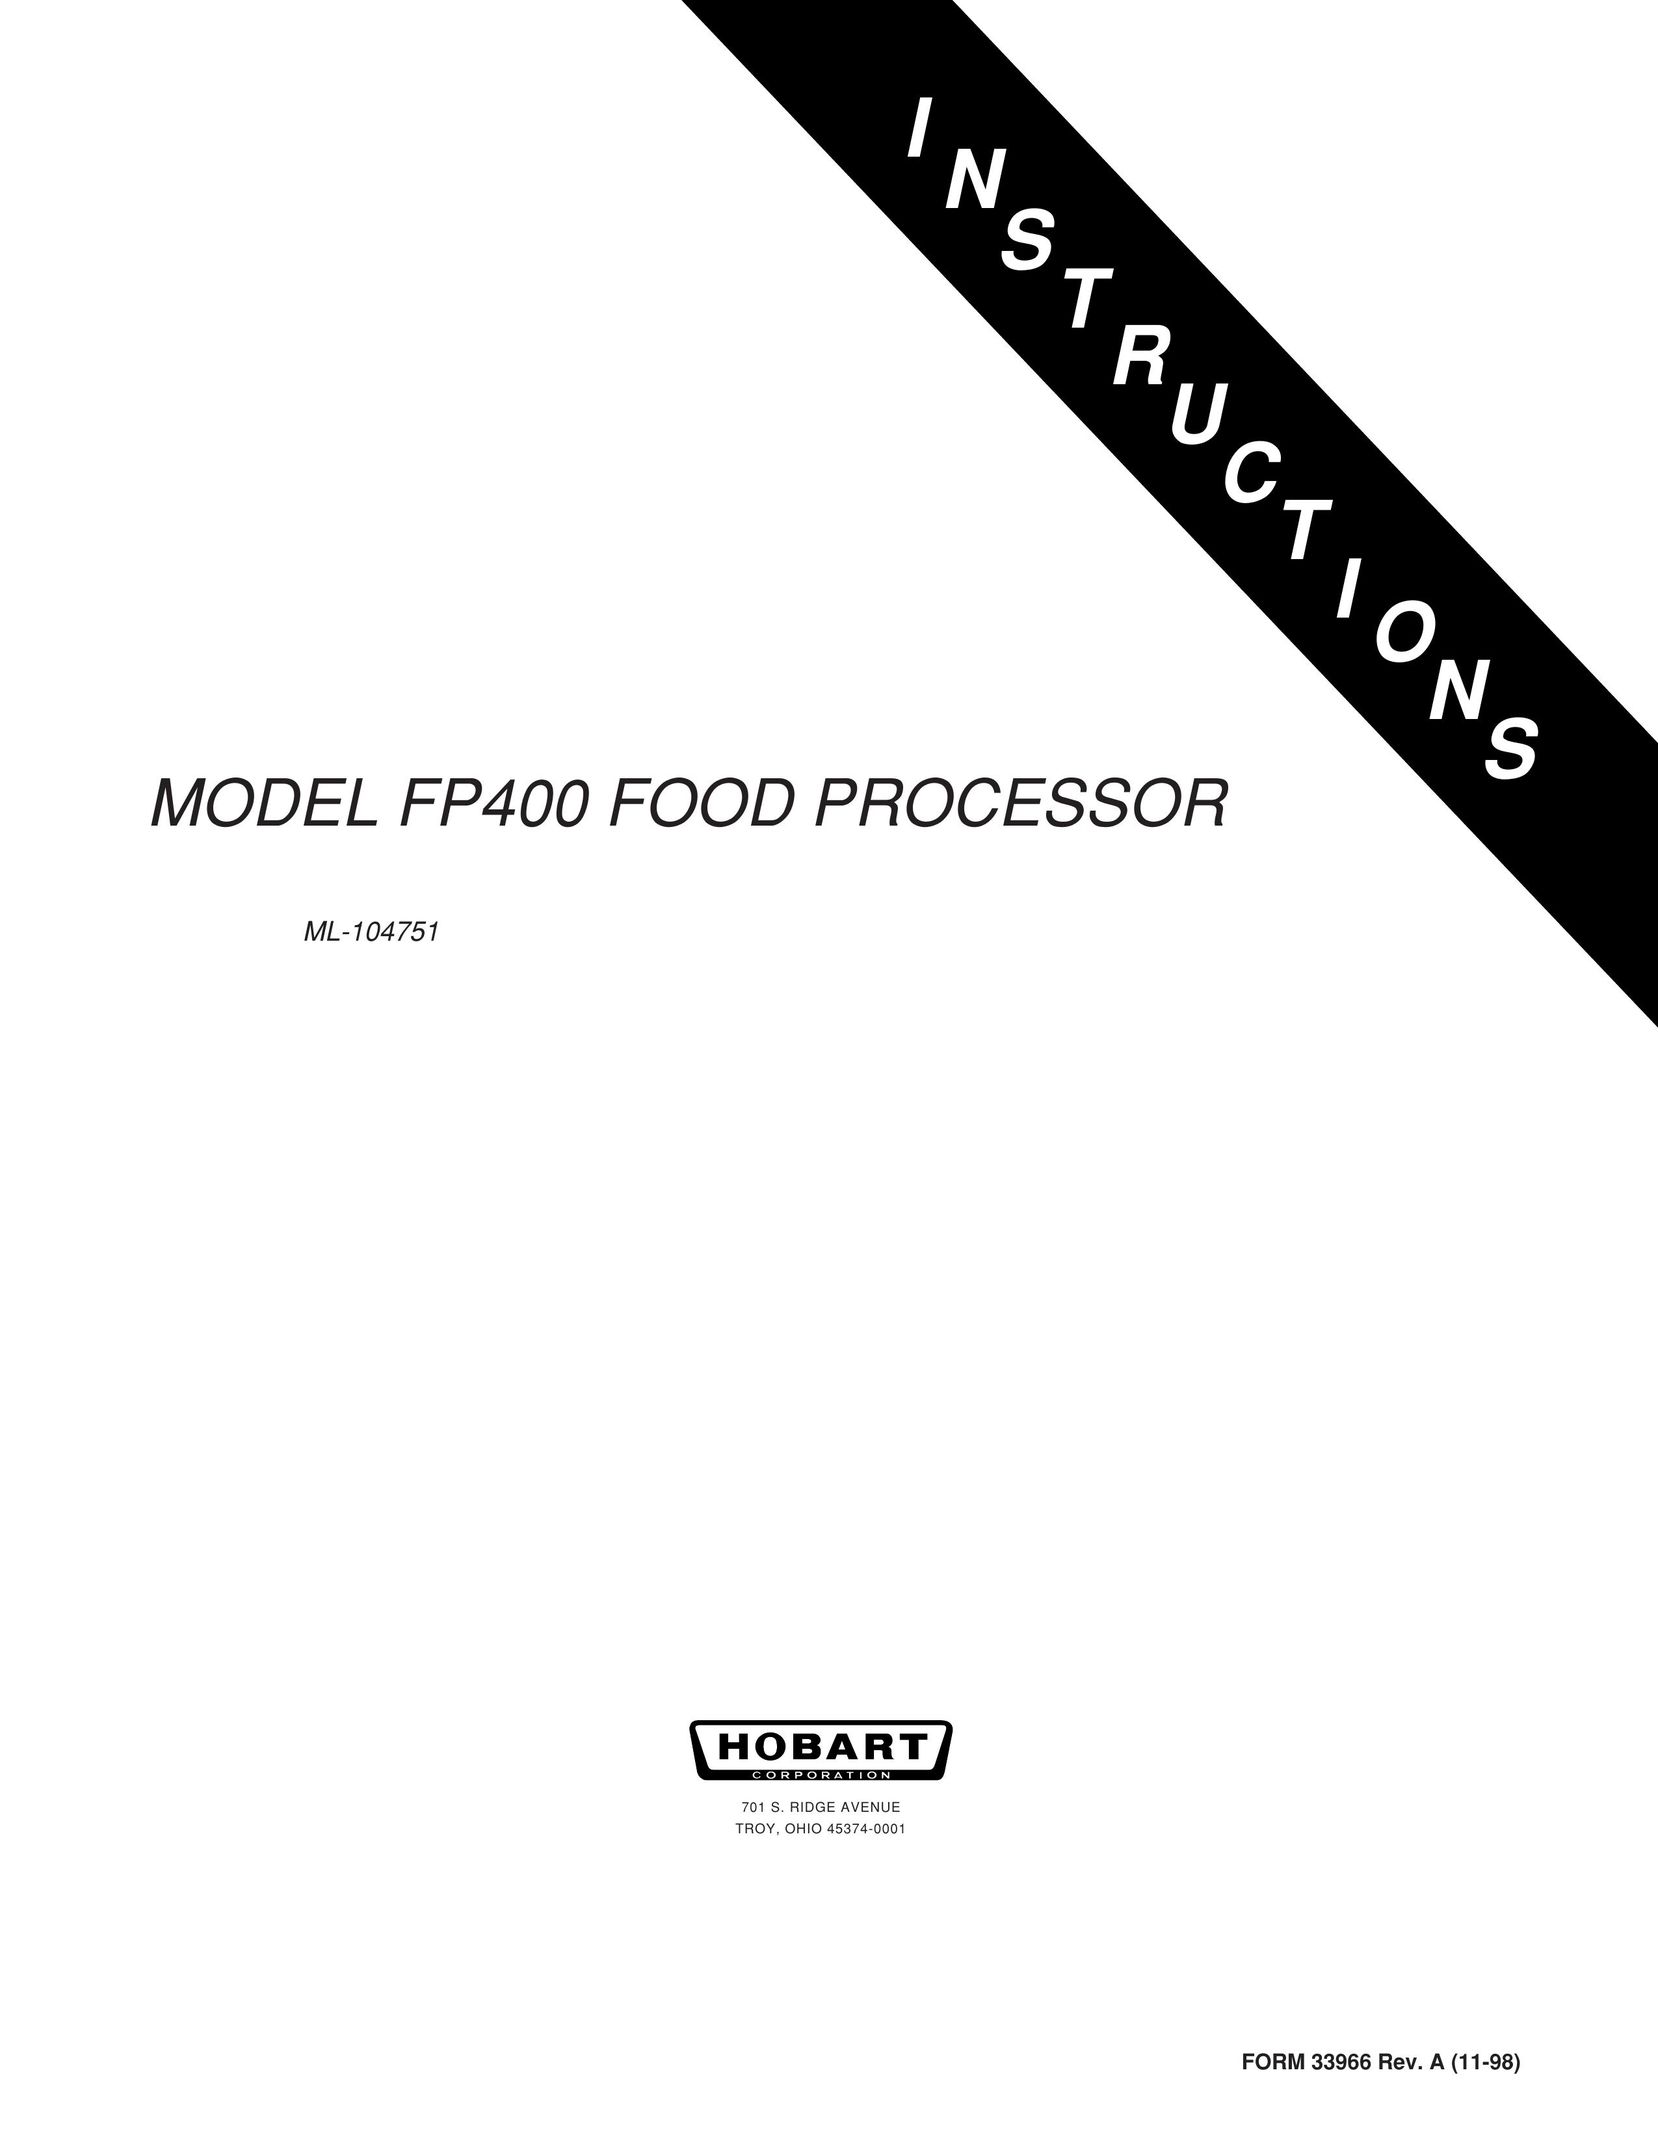 Hobart FP400 Food Processor User Manual